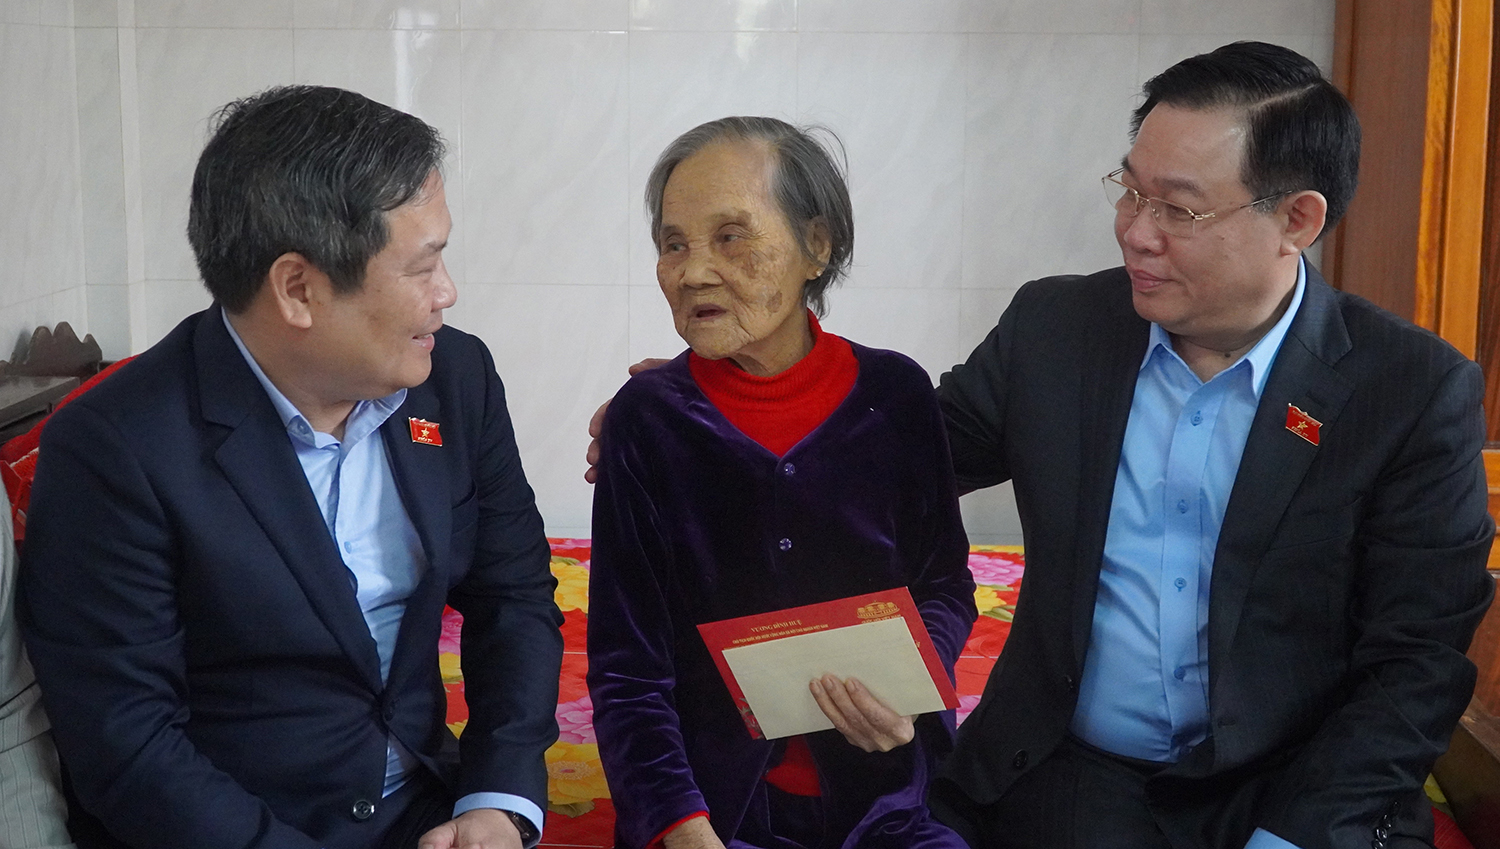 Đồng chí Chủ tịch Quốc hôi Vương Đình Huệ và đồng chí Bí thư Tỉnh ủy Vũ Đại Thắng thăm Bà mẹ VNAH Nguyễn Thị Tôi